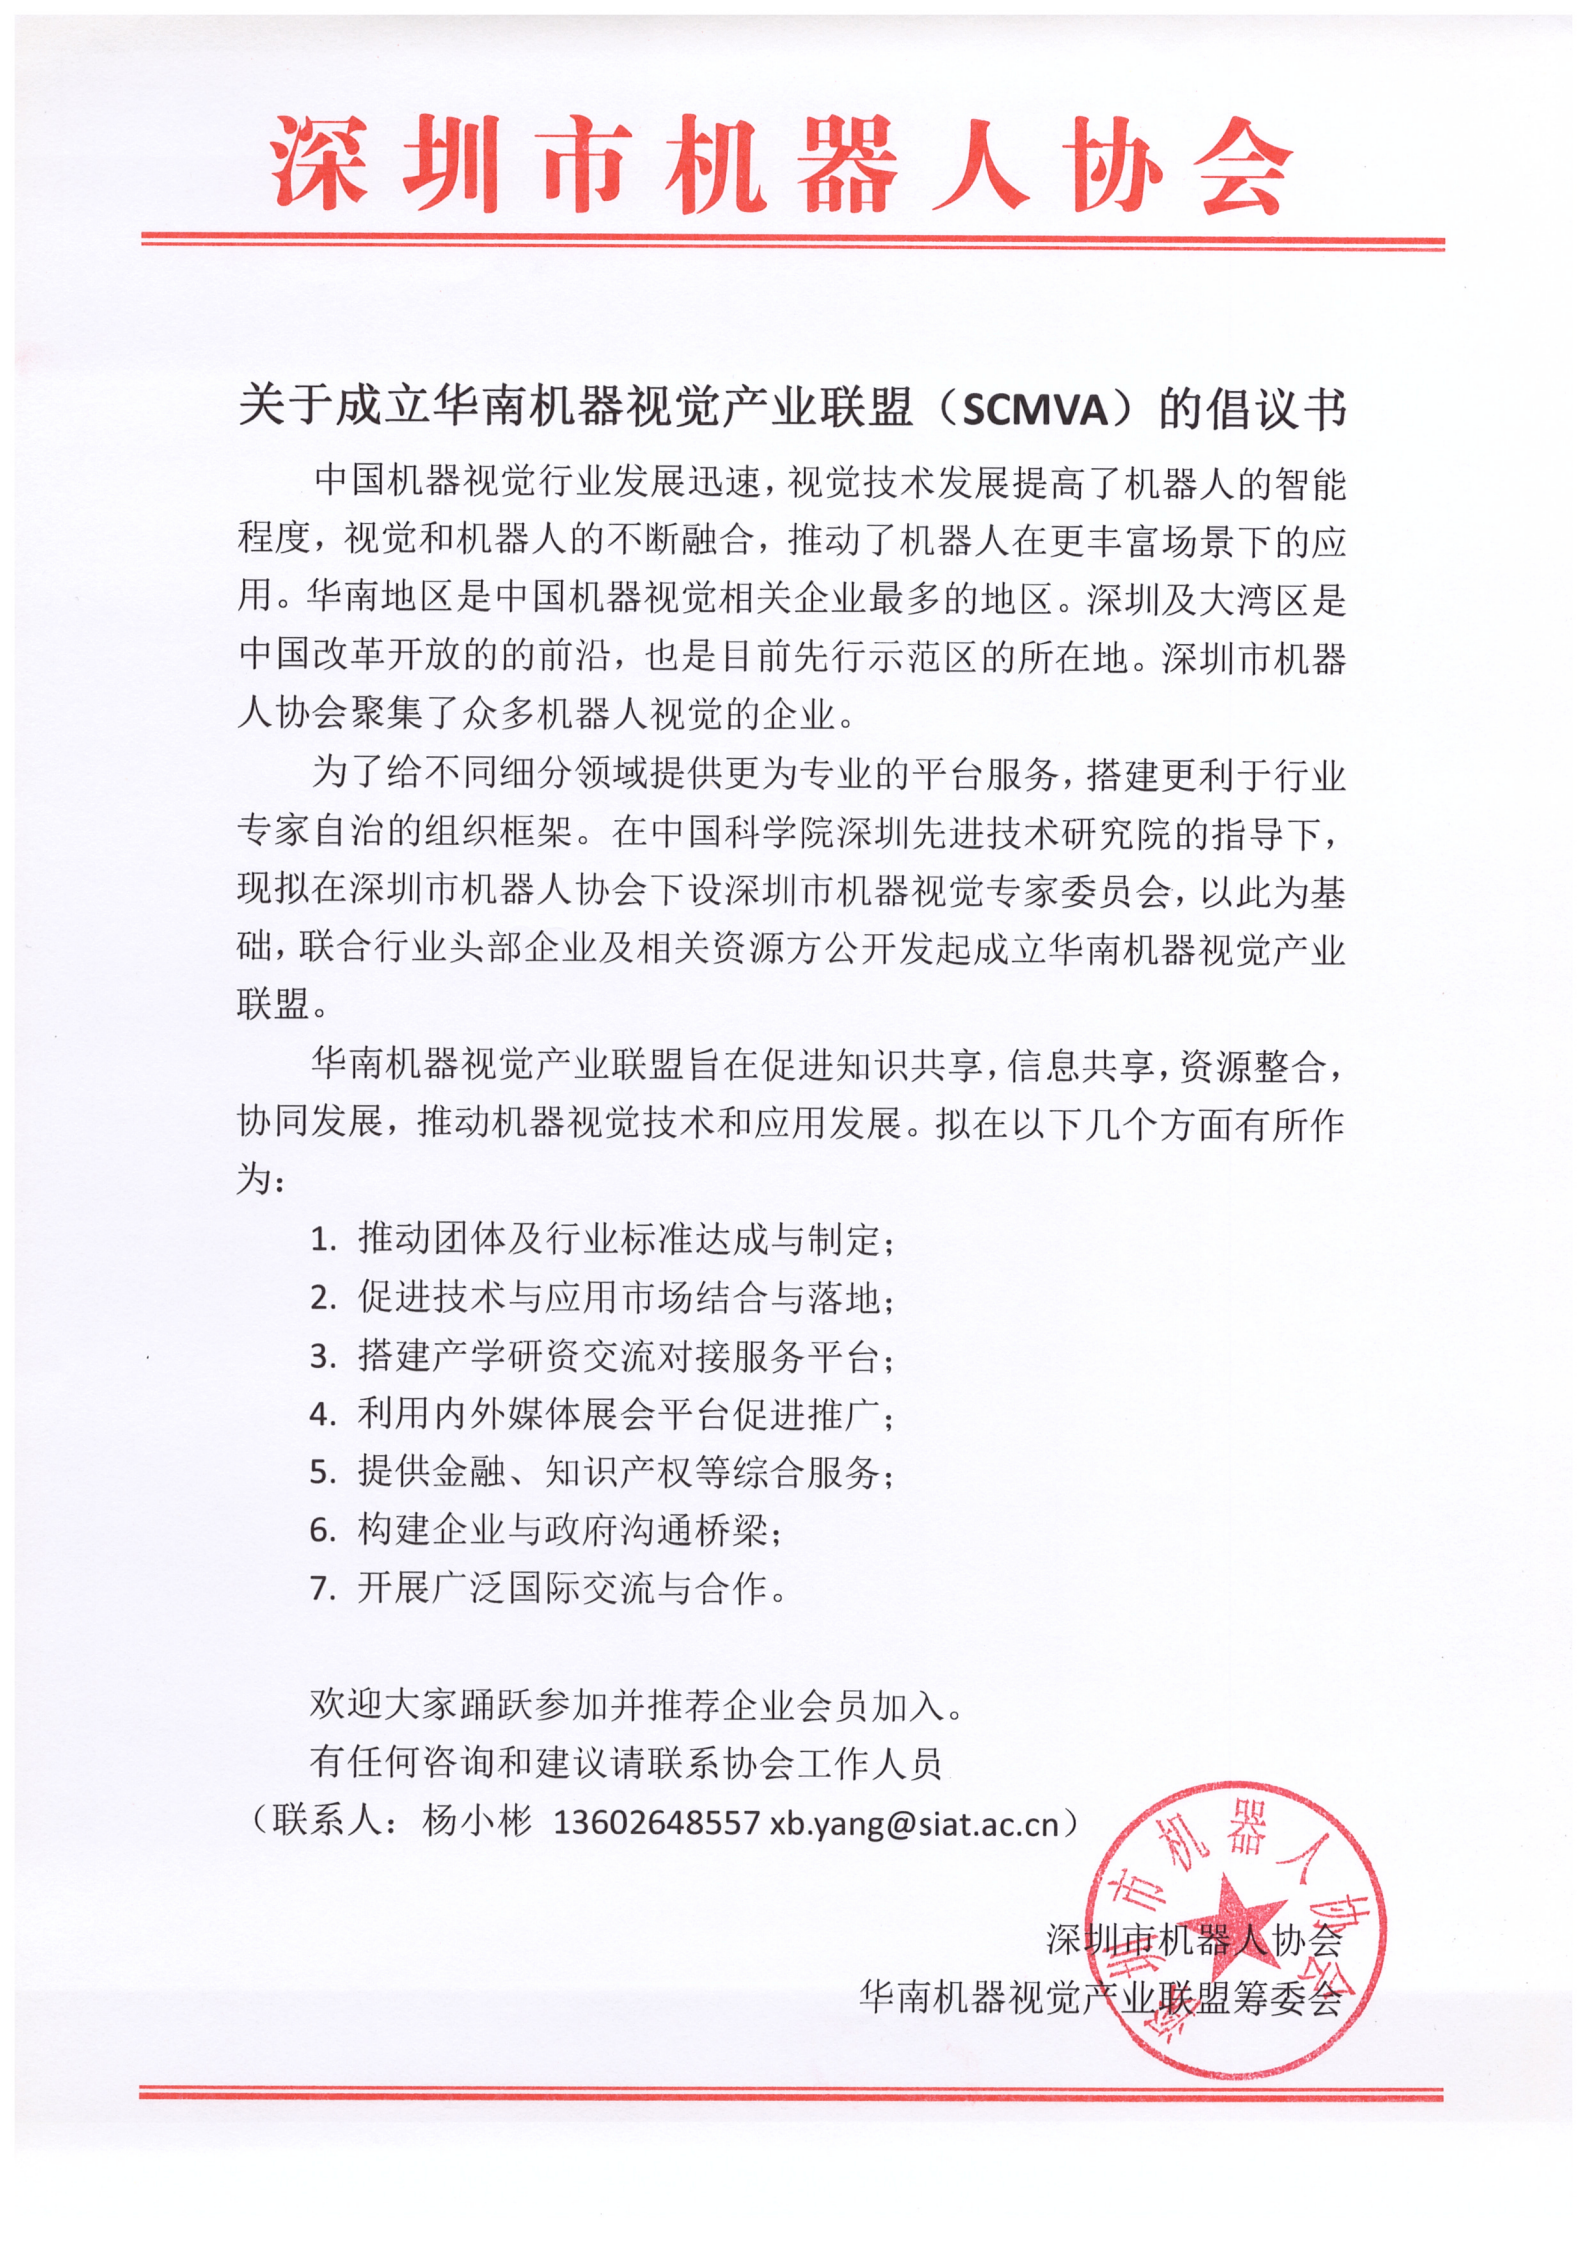 关于成立华南机器视觉产业联盟（SCMVA）的倡议书_00.png